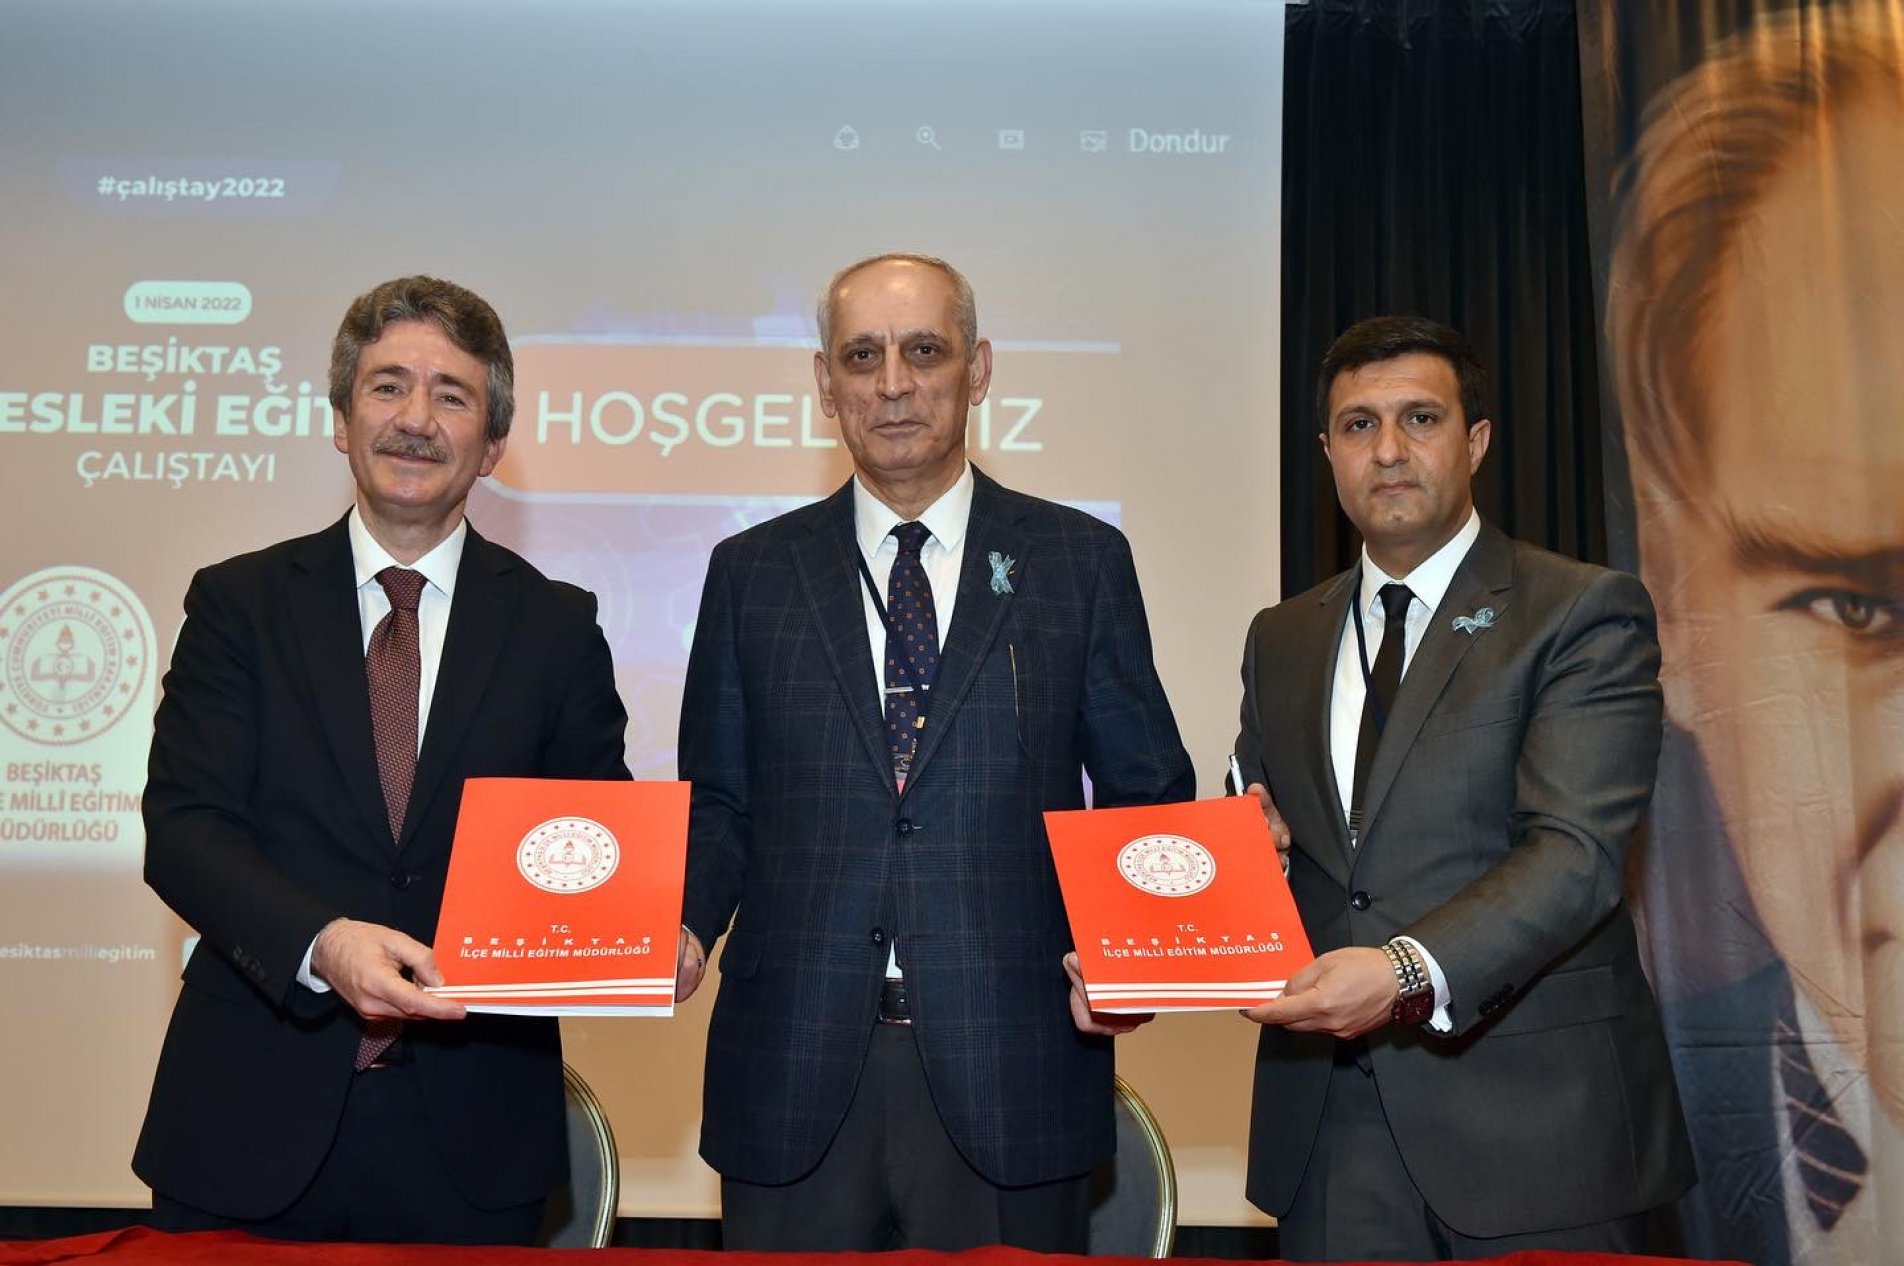 Beşiktaş İlçe Milli Eğitim ile işbirliği protokolü imzaladık, çalıştaya katıldık.